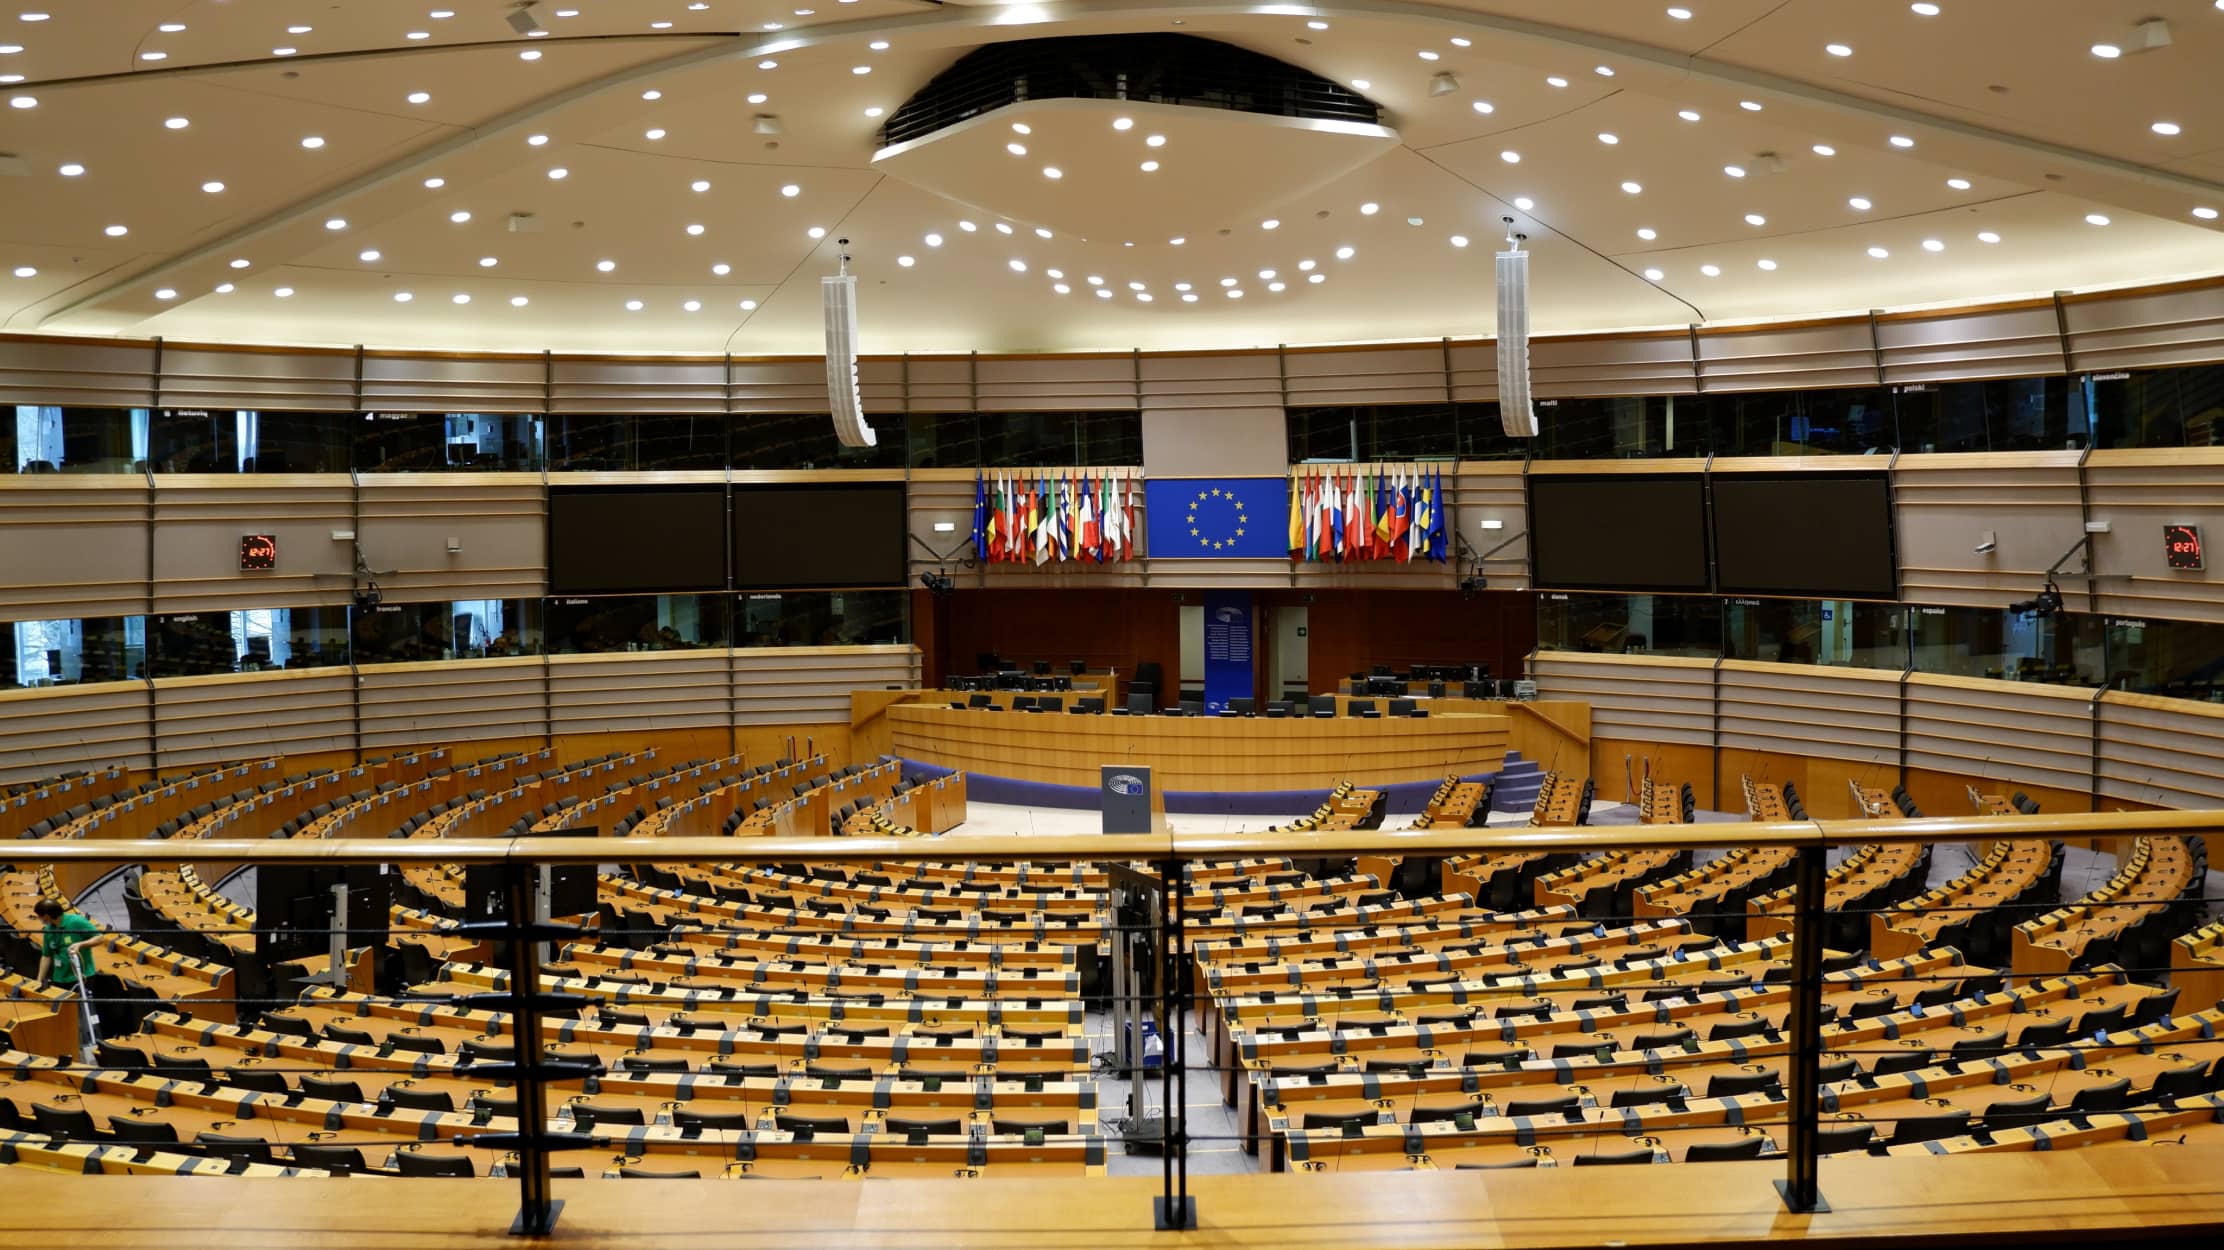 agenda do trabalho digno portuguesa foi aprovada no parlamento europeu